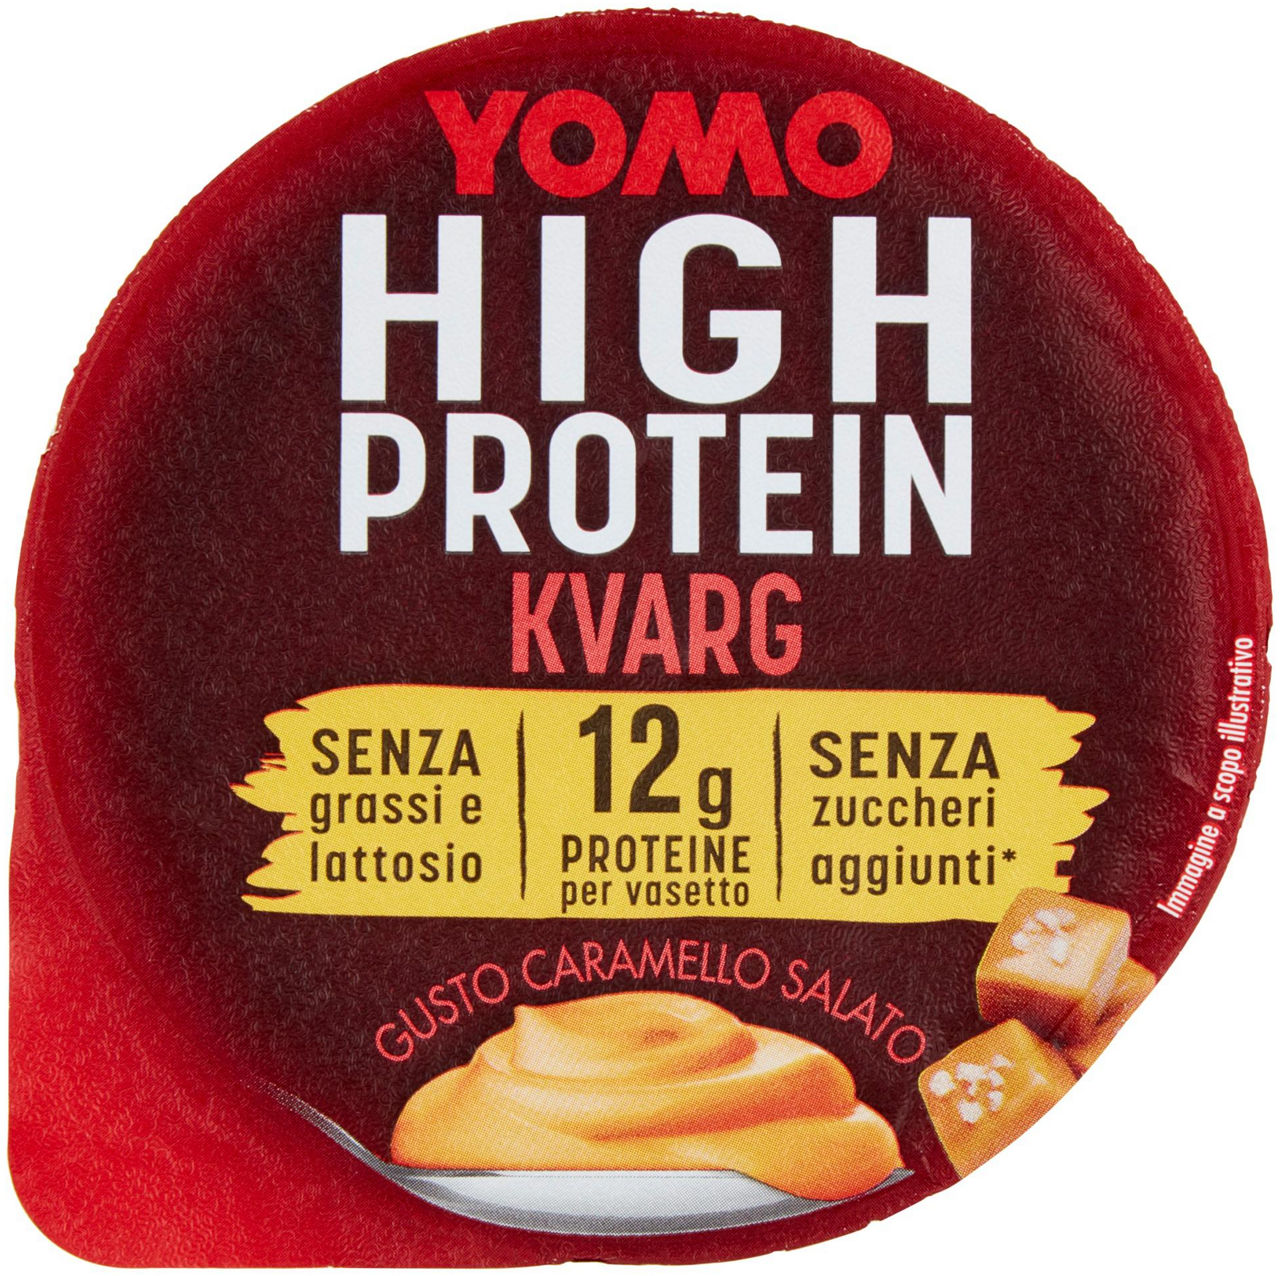 Yomo high protein kvarg caramello salato g 140